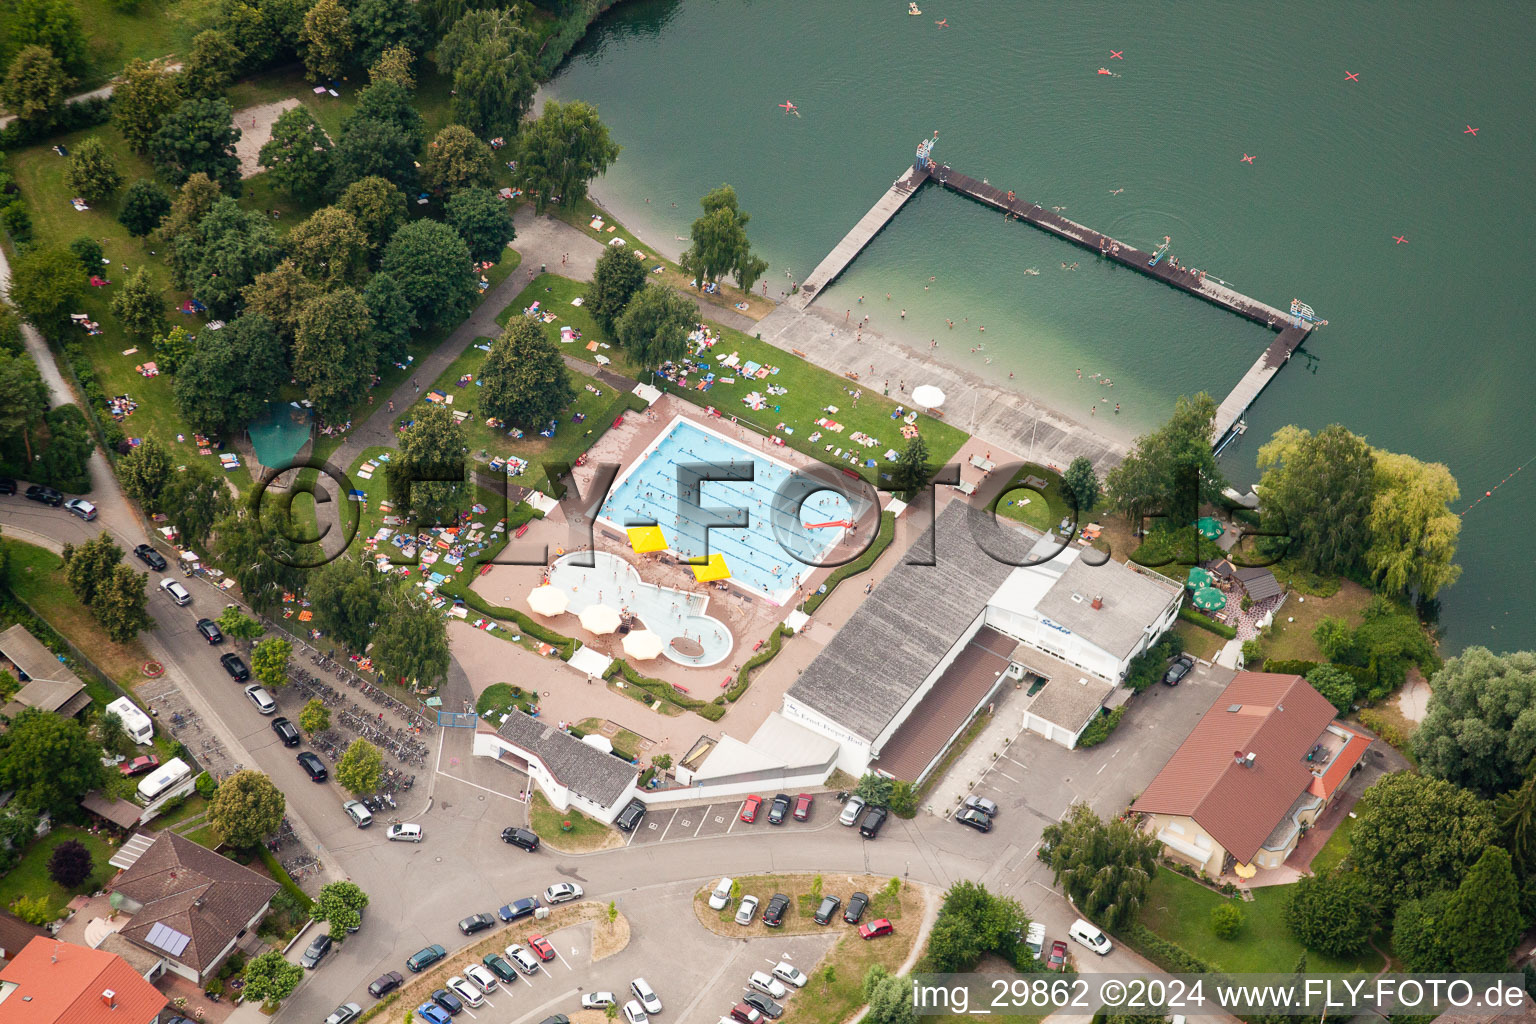 Vue aérienne de Piscine de la piscine extérieure Ernst-Freyer-Bad à Philippsburg dans le département Bade-Wurtemberg, Allemagne